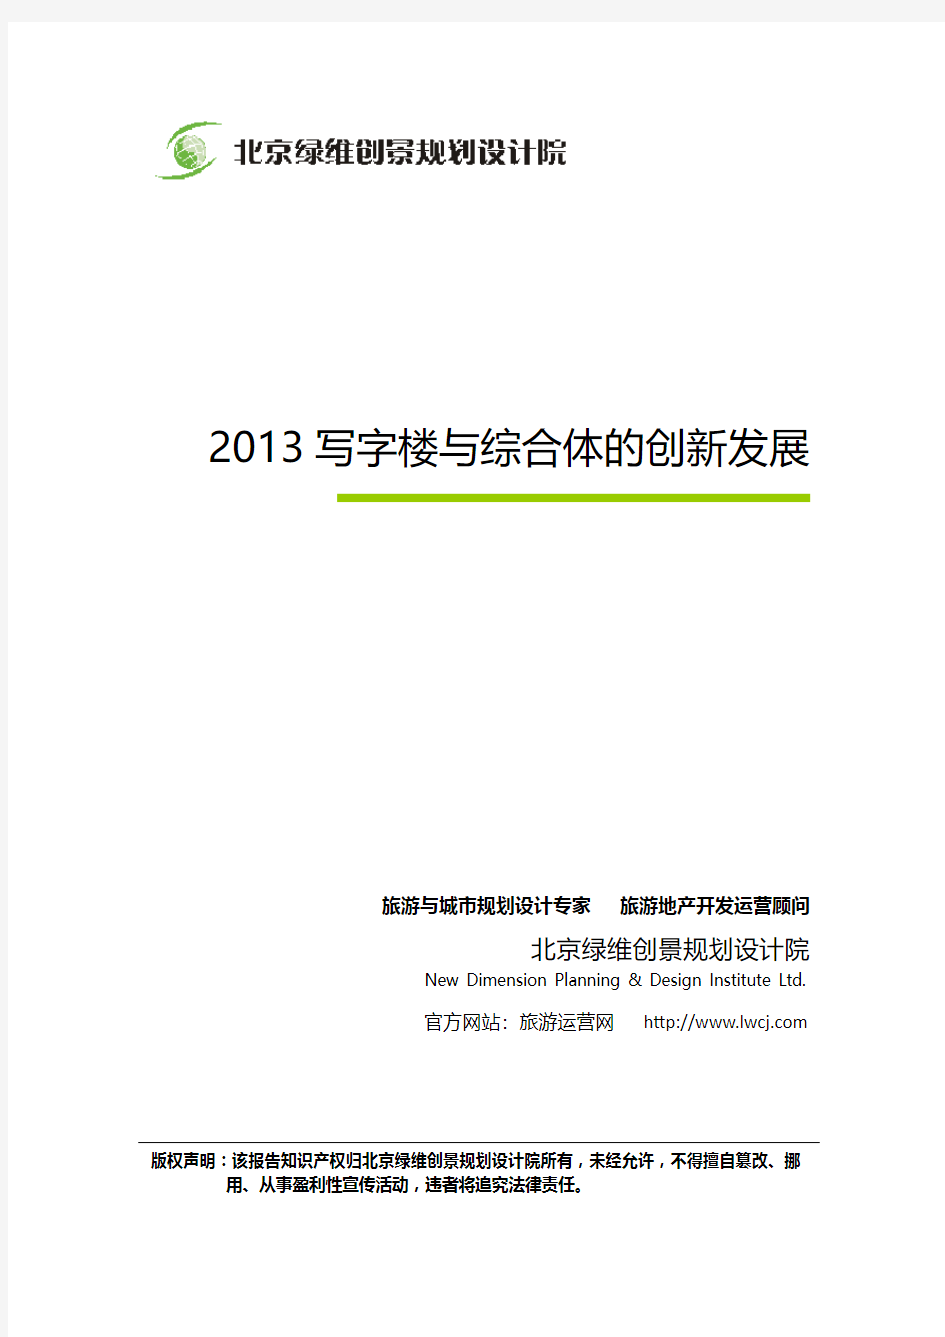 2013写字楼与综合体的创新发展-房地产创新报告-绿维创景